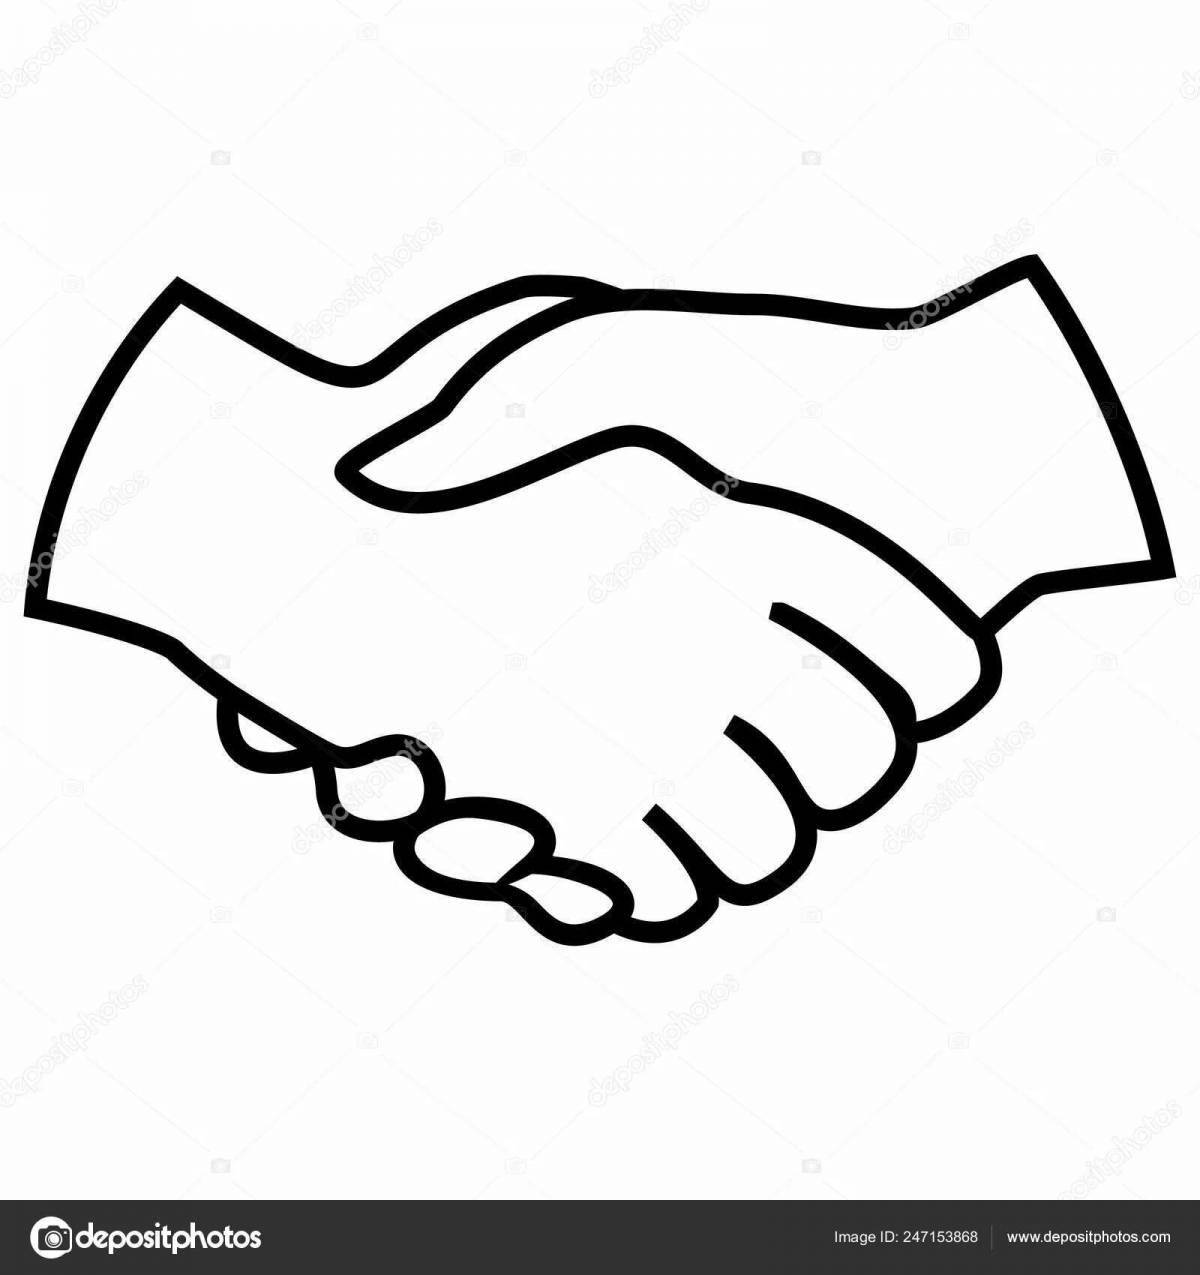 Handshake #8